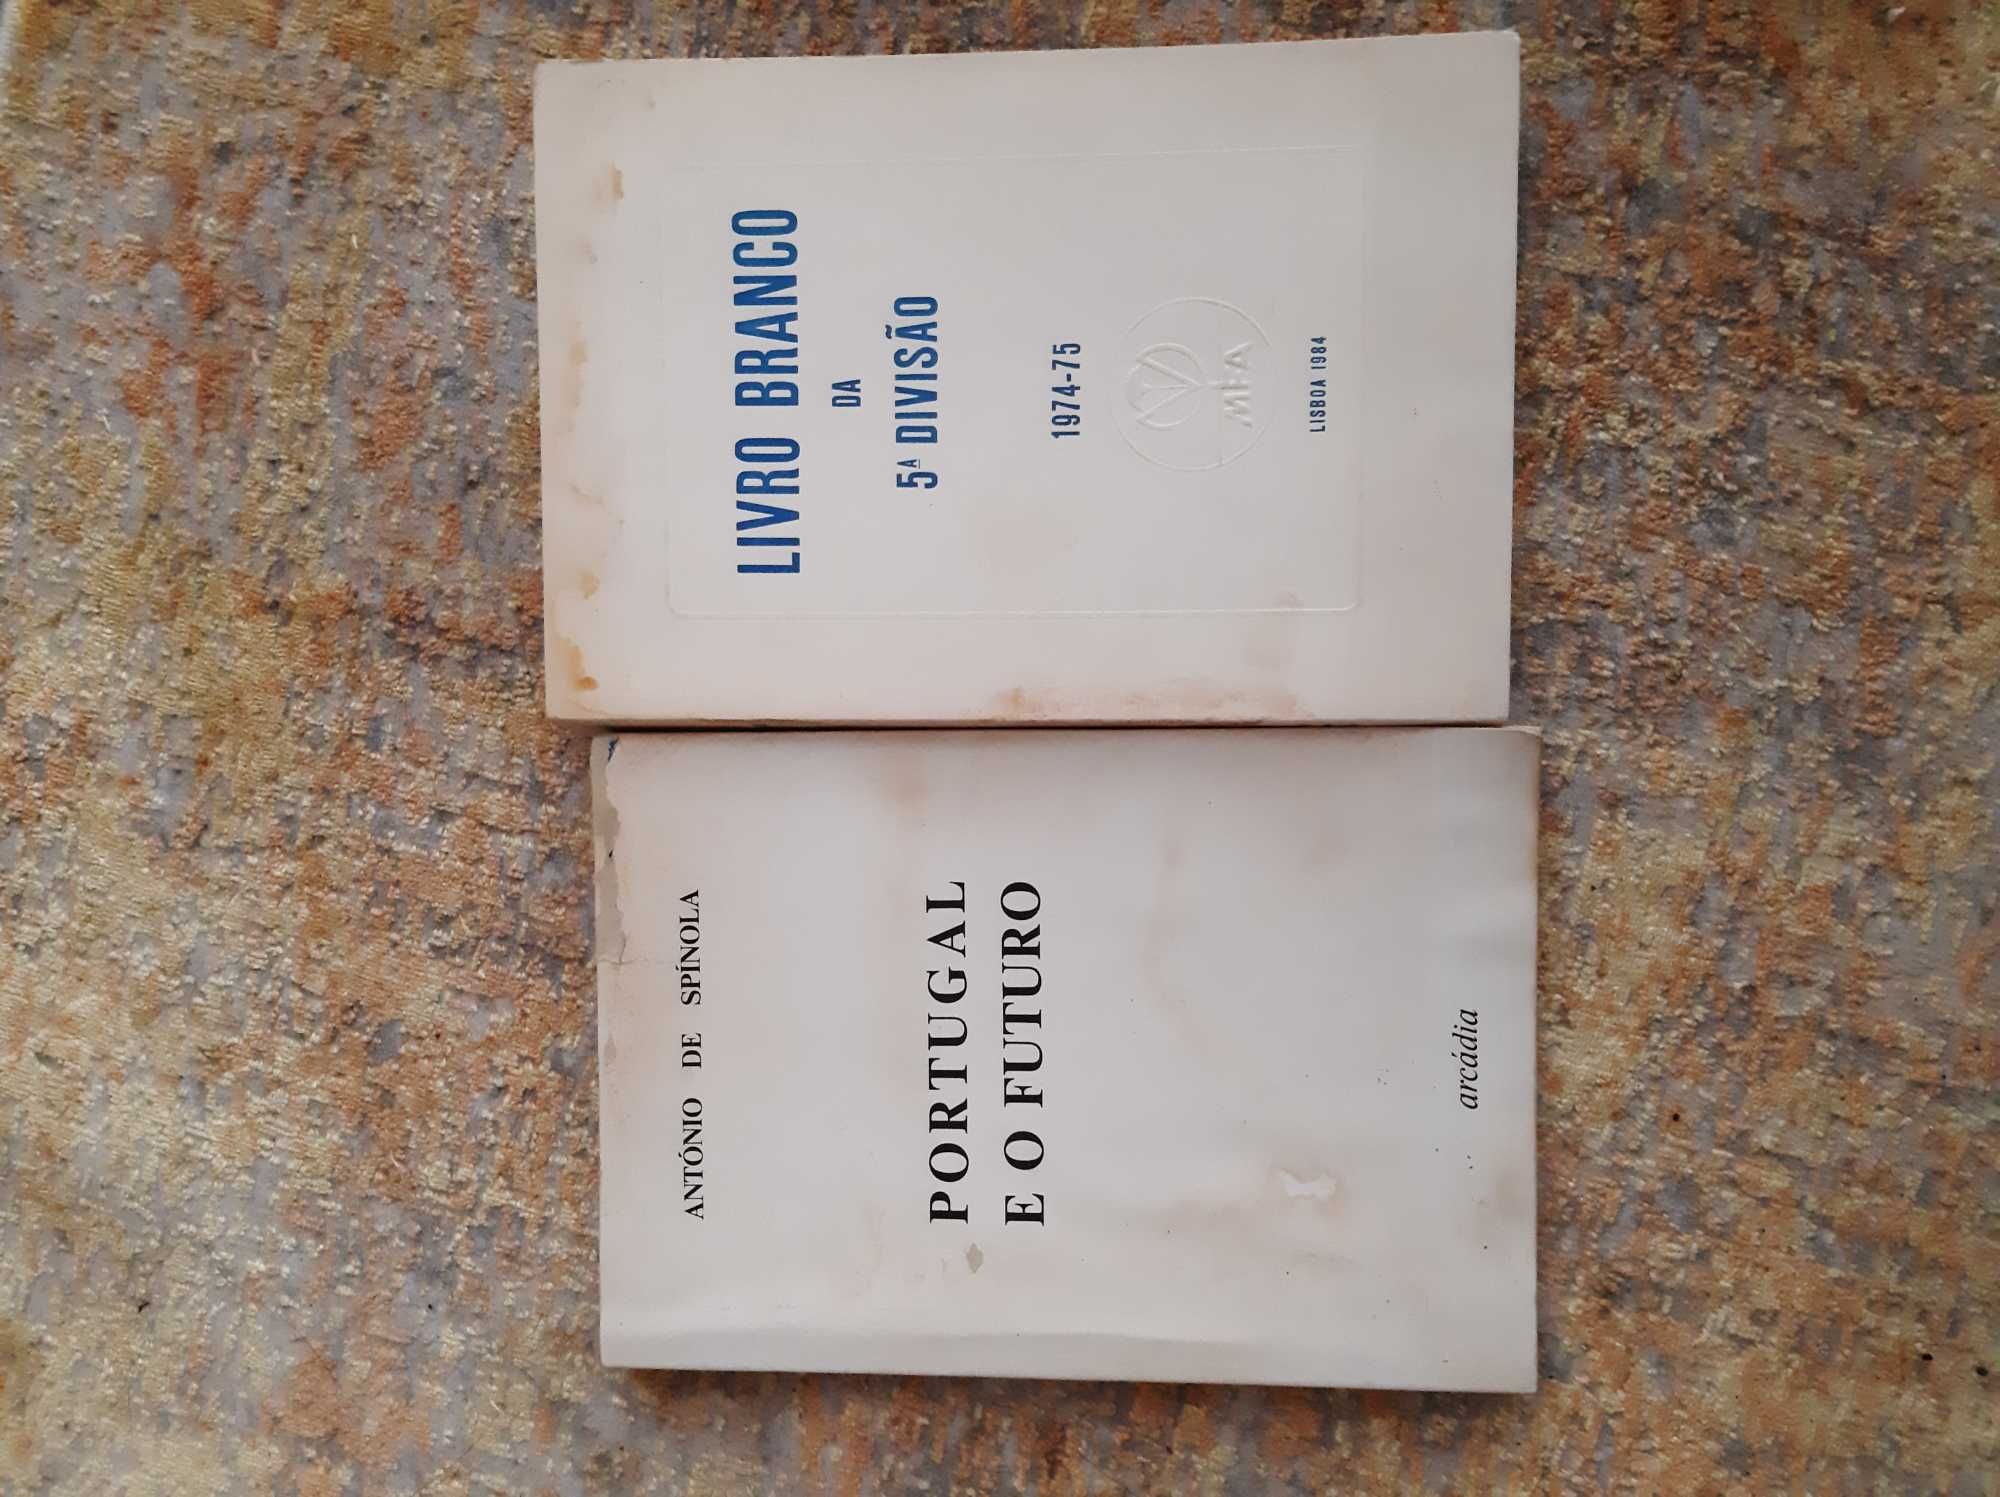 Portugal e o futuro e Livro Branco da 5.ª Divisão, valor por 2 livros